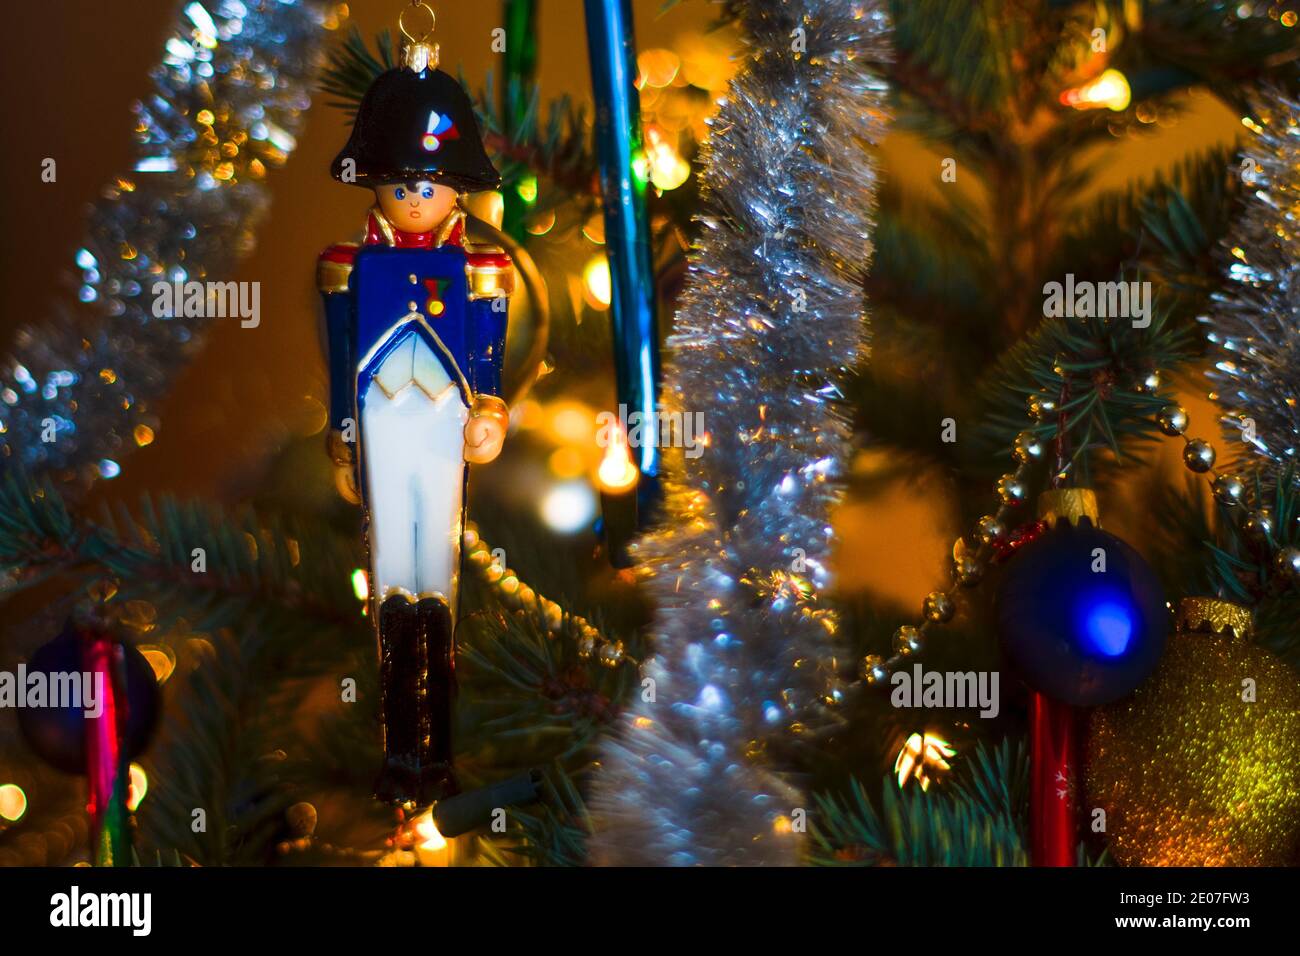 Die Kugel des französischen napoleonischen Infanteriesoldaten hing auf dem Weihnachtsbaum. Saisonale Winter Hintergrund mit Weihnachten Nahaufnahme Spielzeug auf dem Baum. Stockfoto